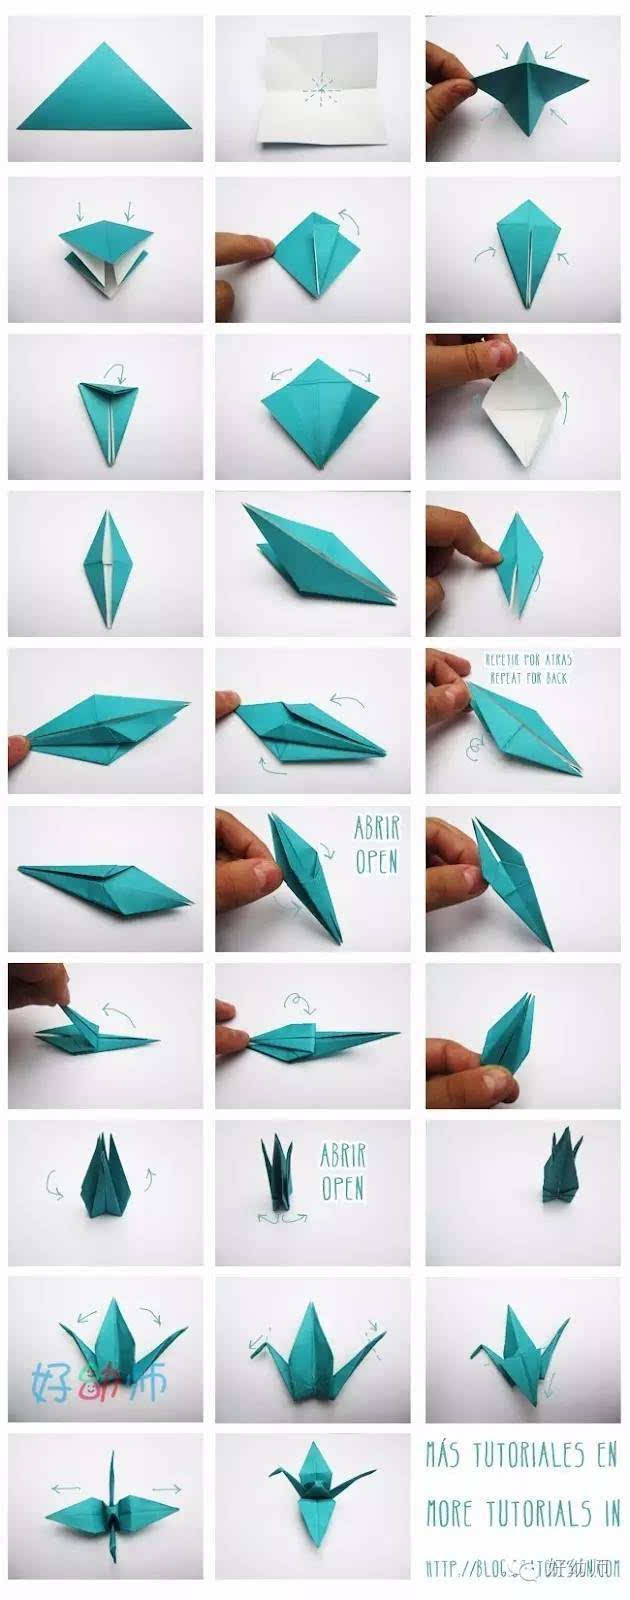 简单实用的幼儿折纸,你会折这些可爱的小动物吗?